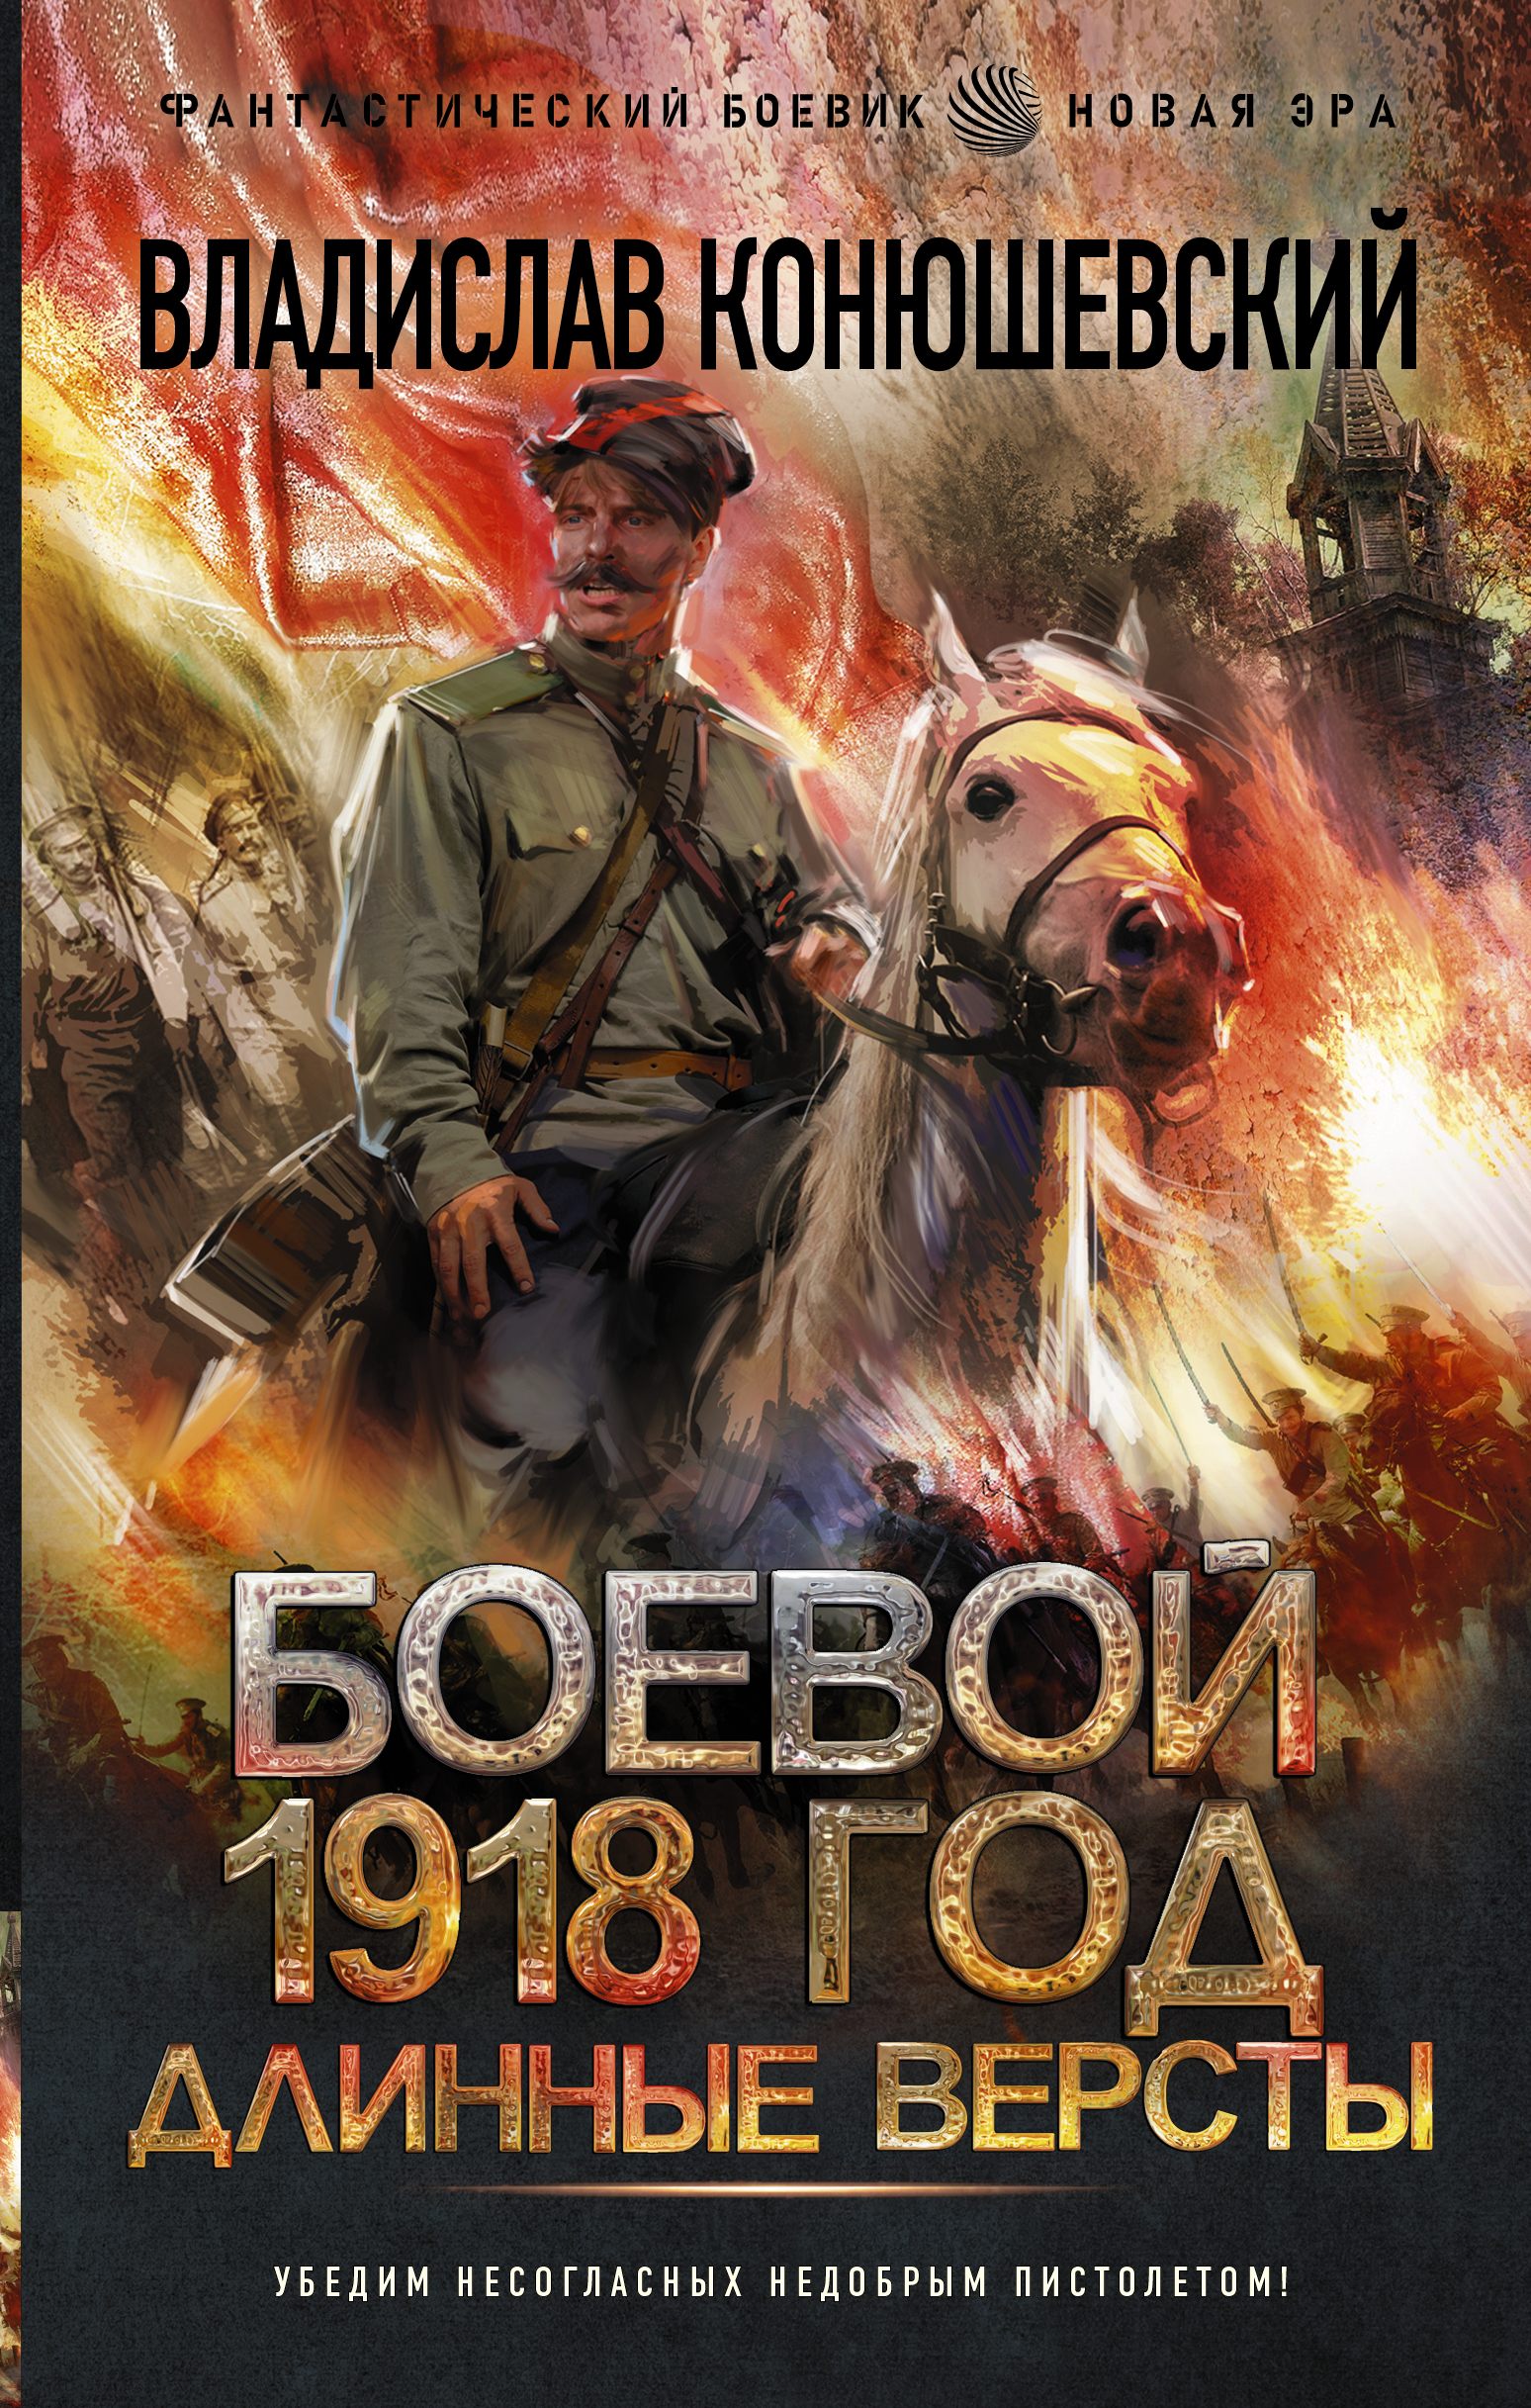  1918 .  